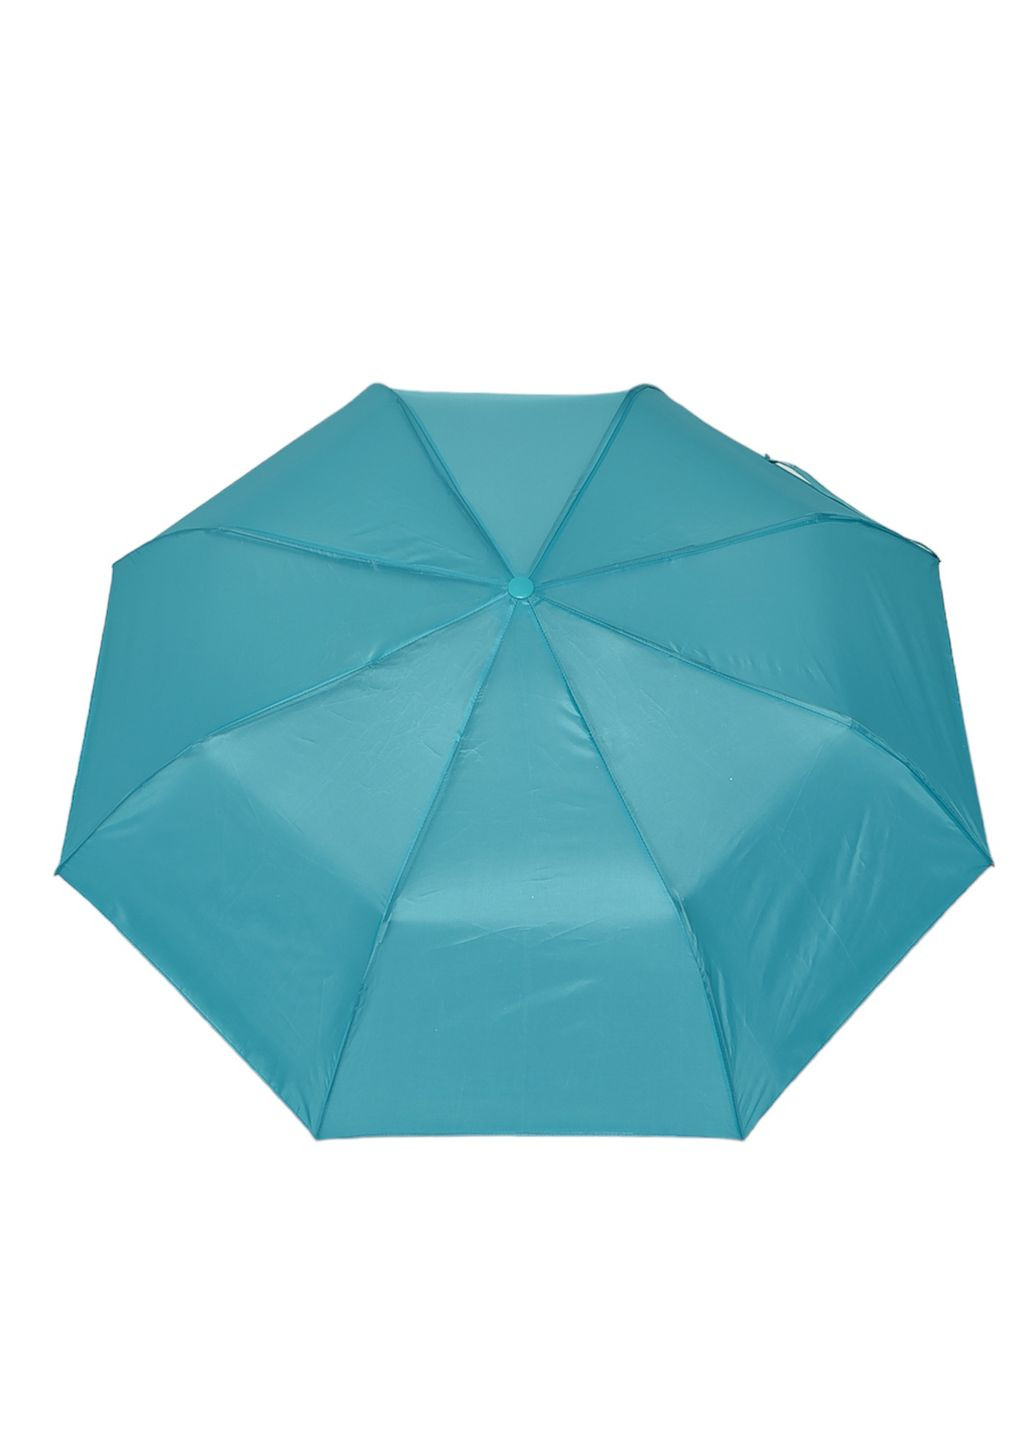 Зонт полуавтомат зеленого цвета Let's Shop (269088985)